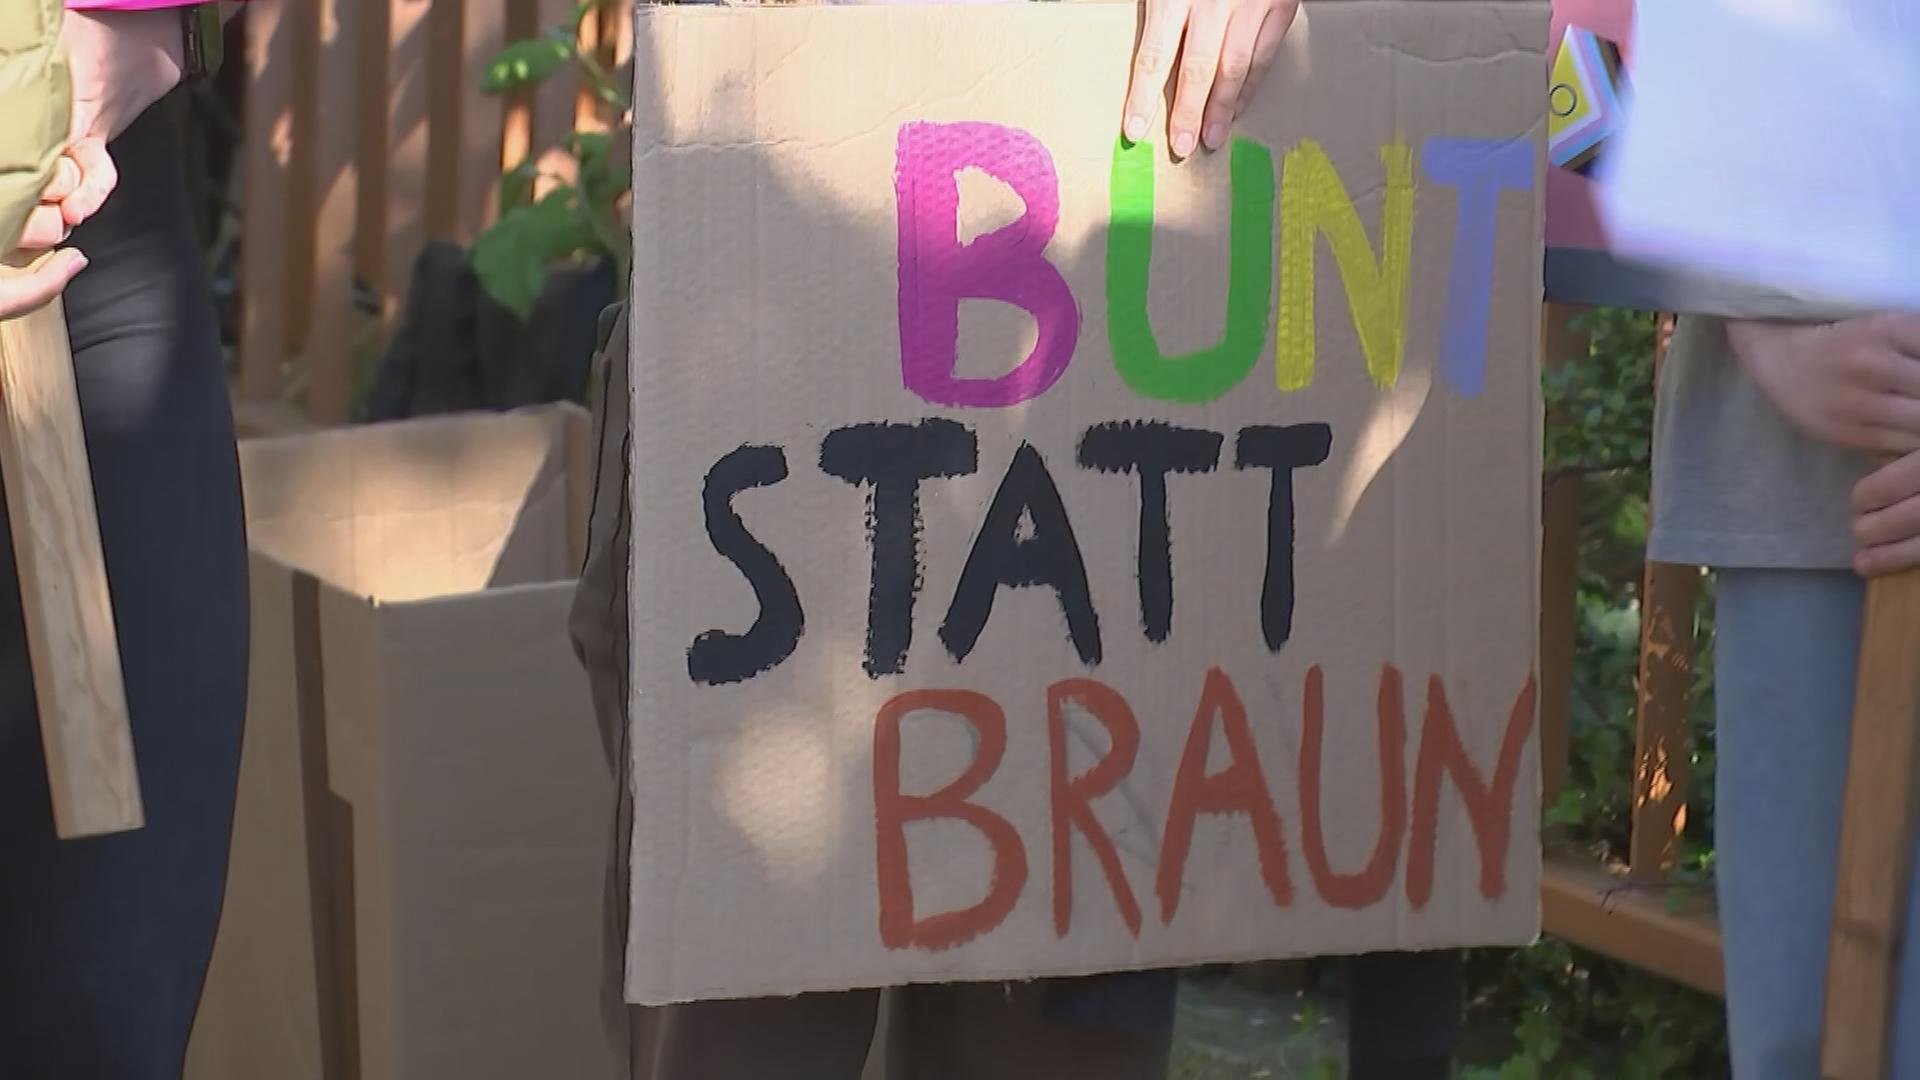 Auf dem Bild ist ein Schild von einer Demonstration gegen Rechts zu sehen, mit der Aufschrift "Bunt statt Braun".